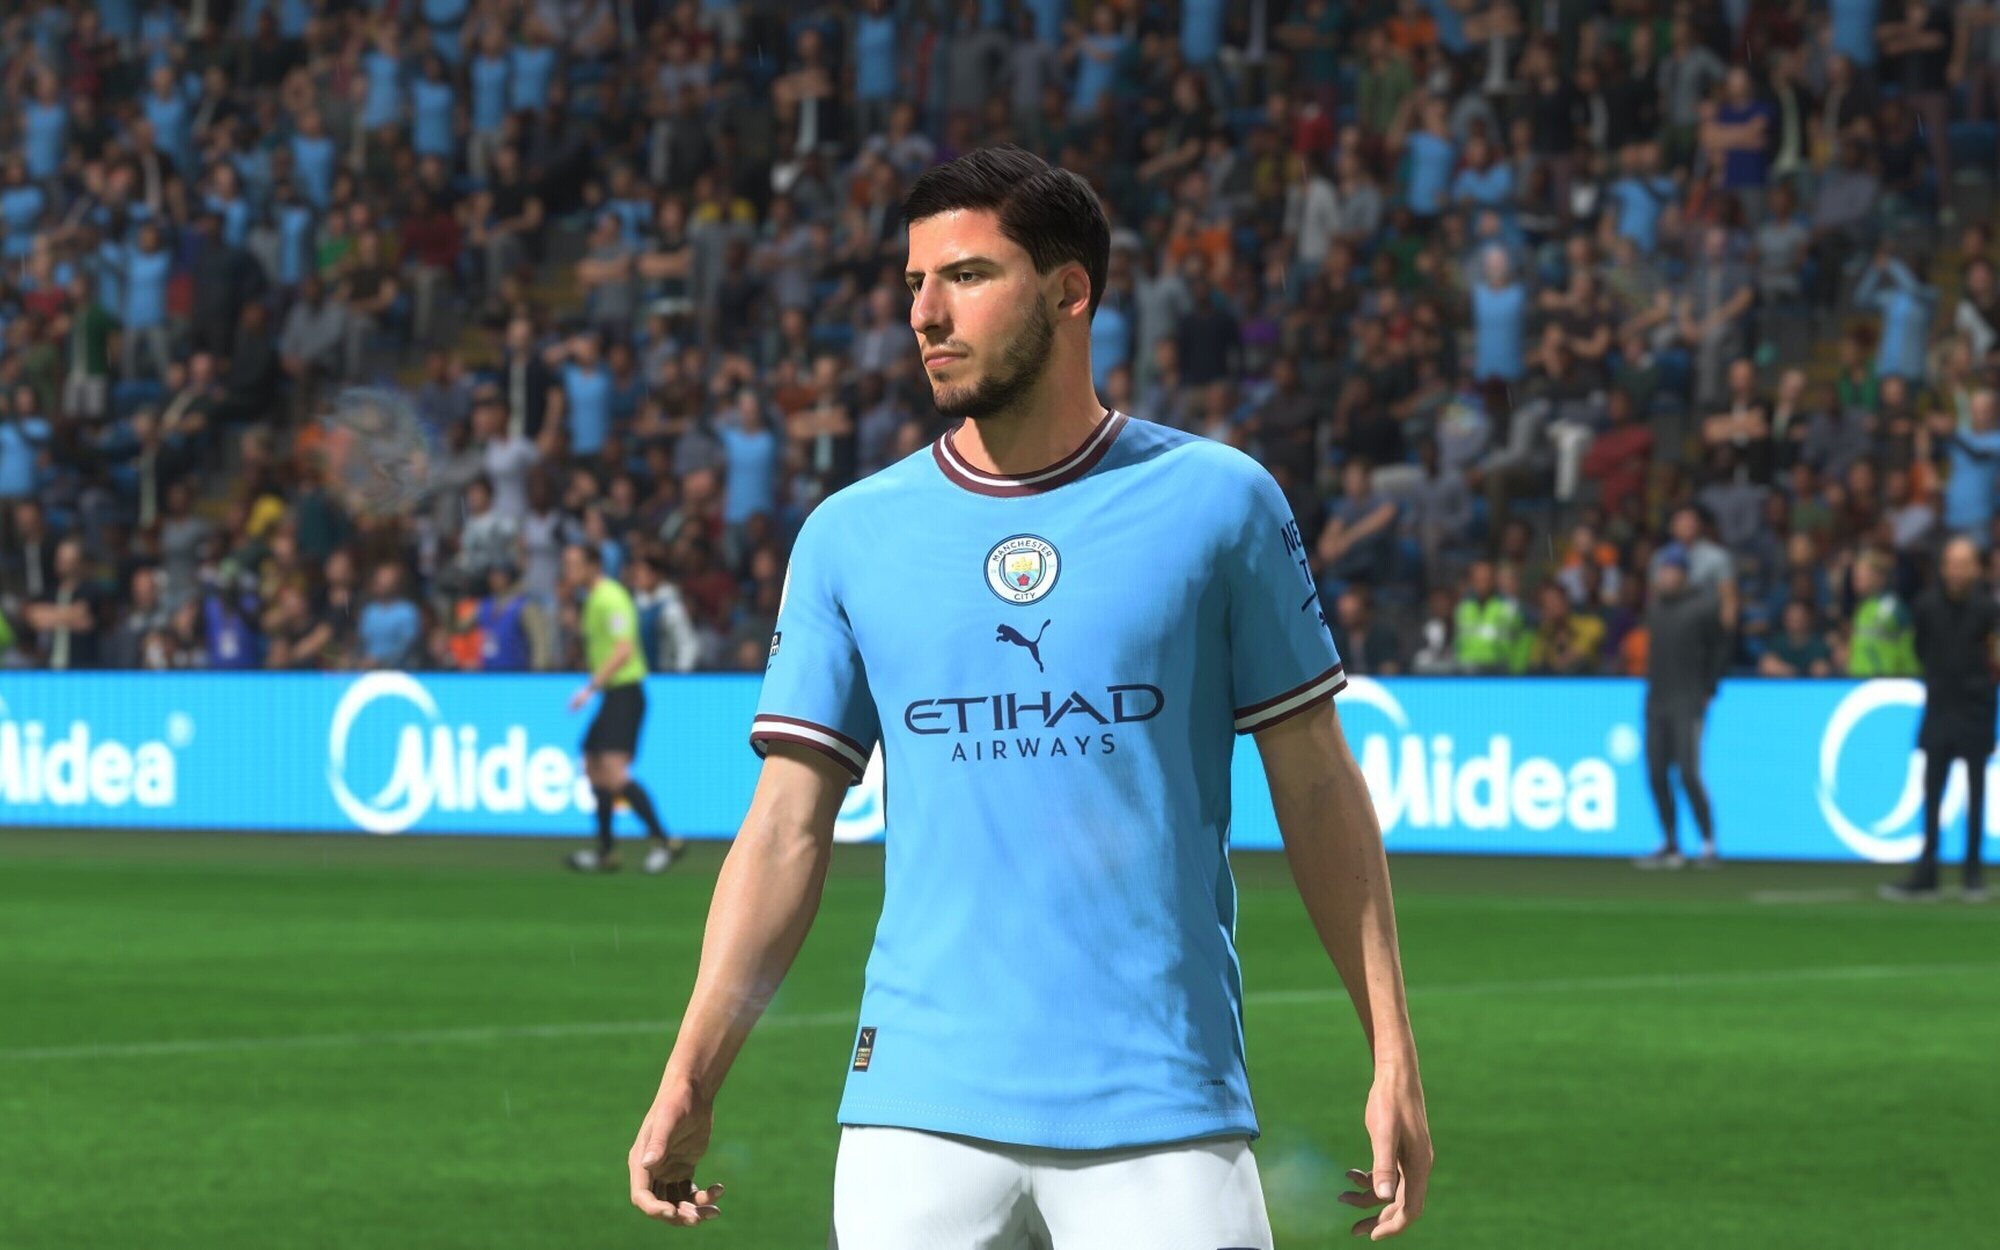 'EA Sports FC' contaría con la licencia de la Premier League gracias a un acuerdo multimillonario